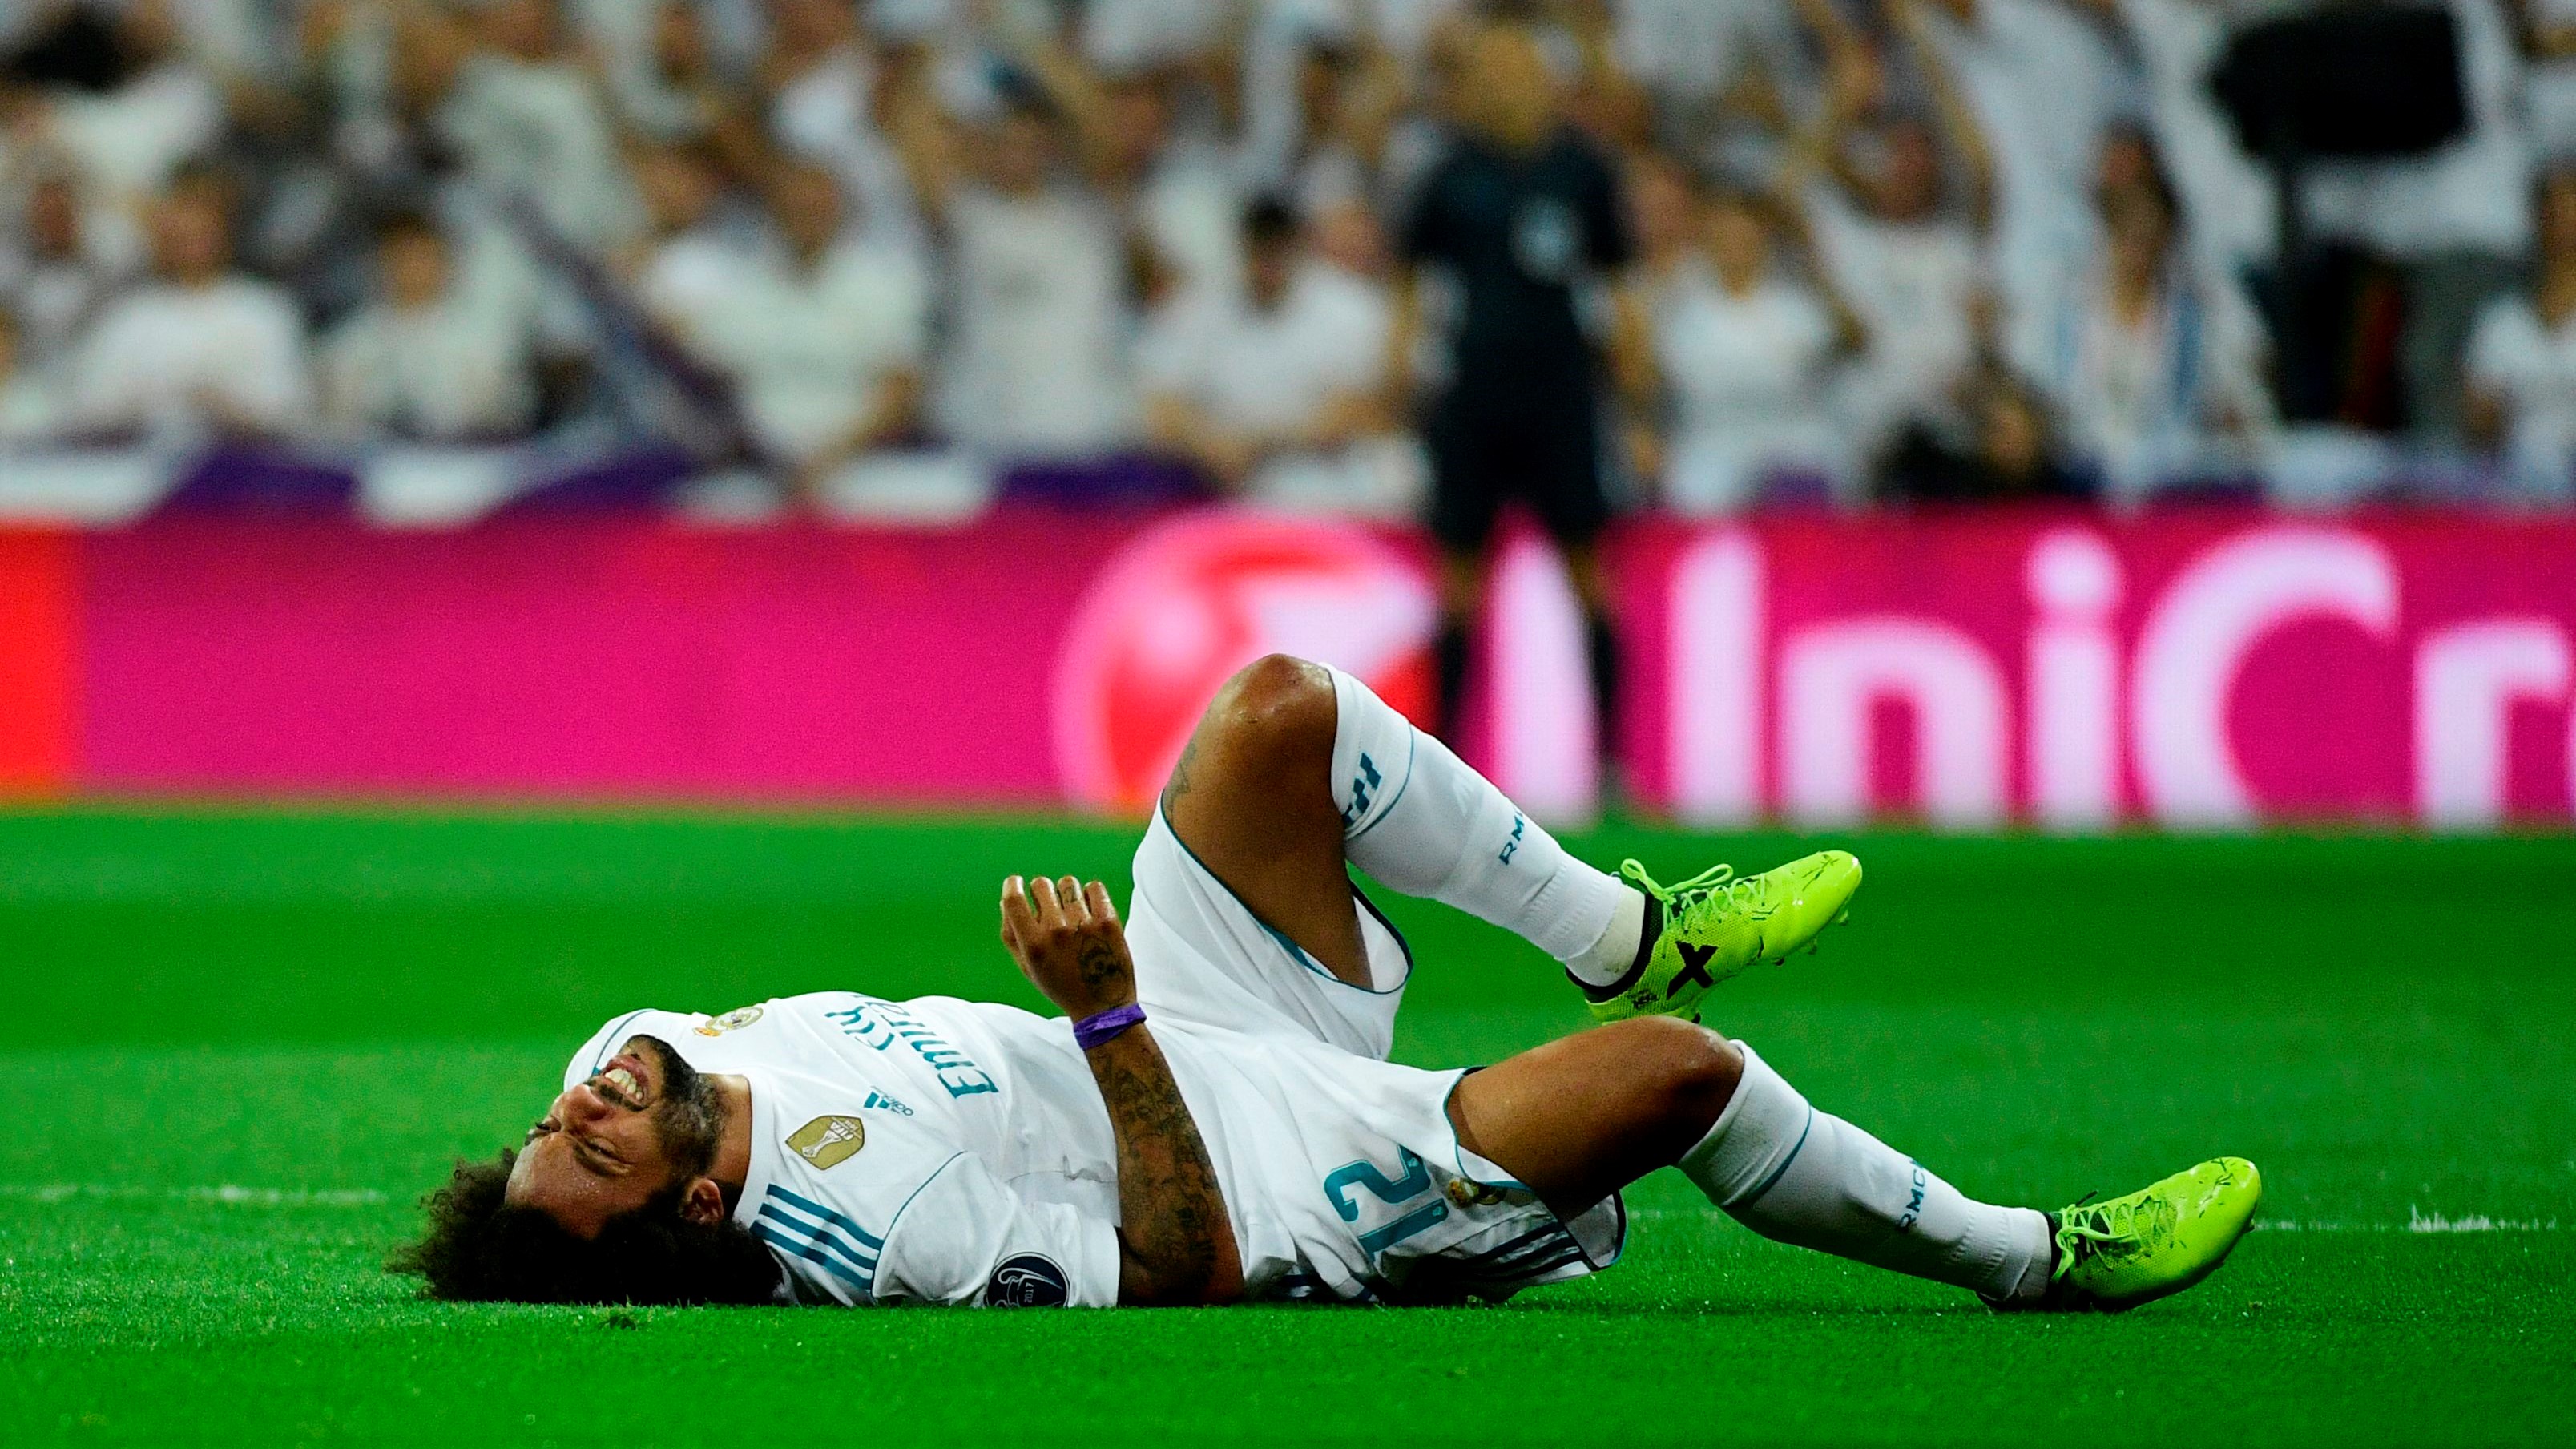 Sau Toni Kroos và Benzema, Real Madrid tiếp tục đón nhận tin cực buồn về chấn thương của Marcelo